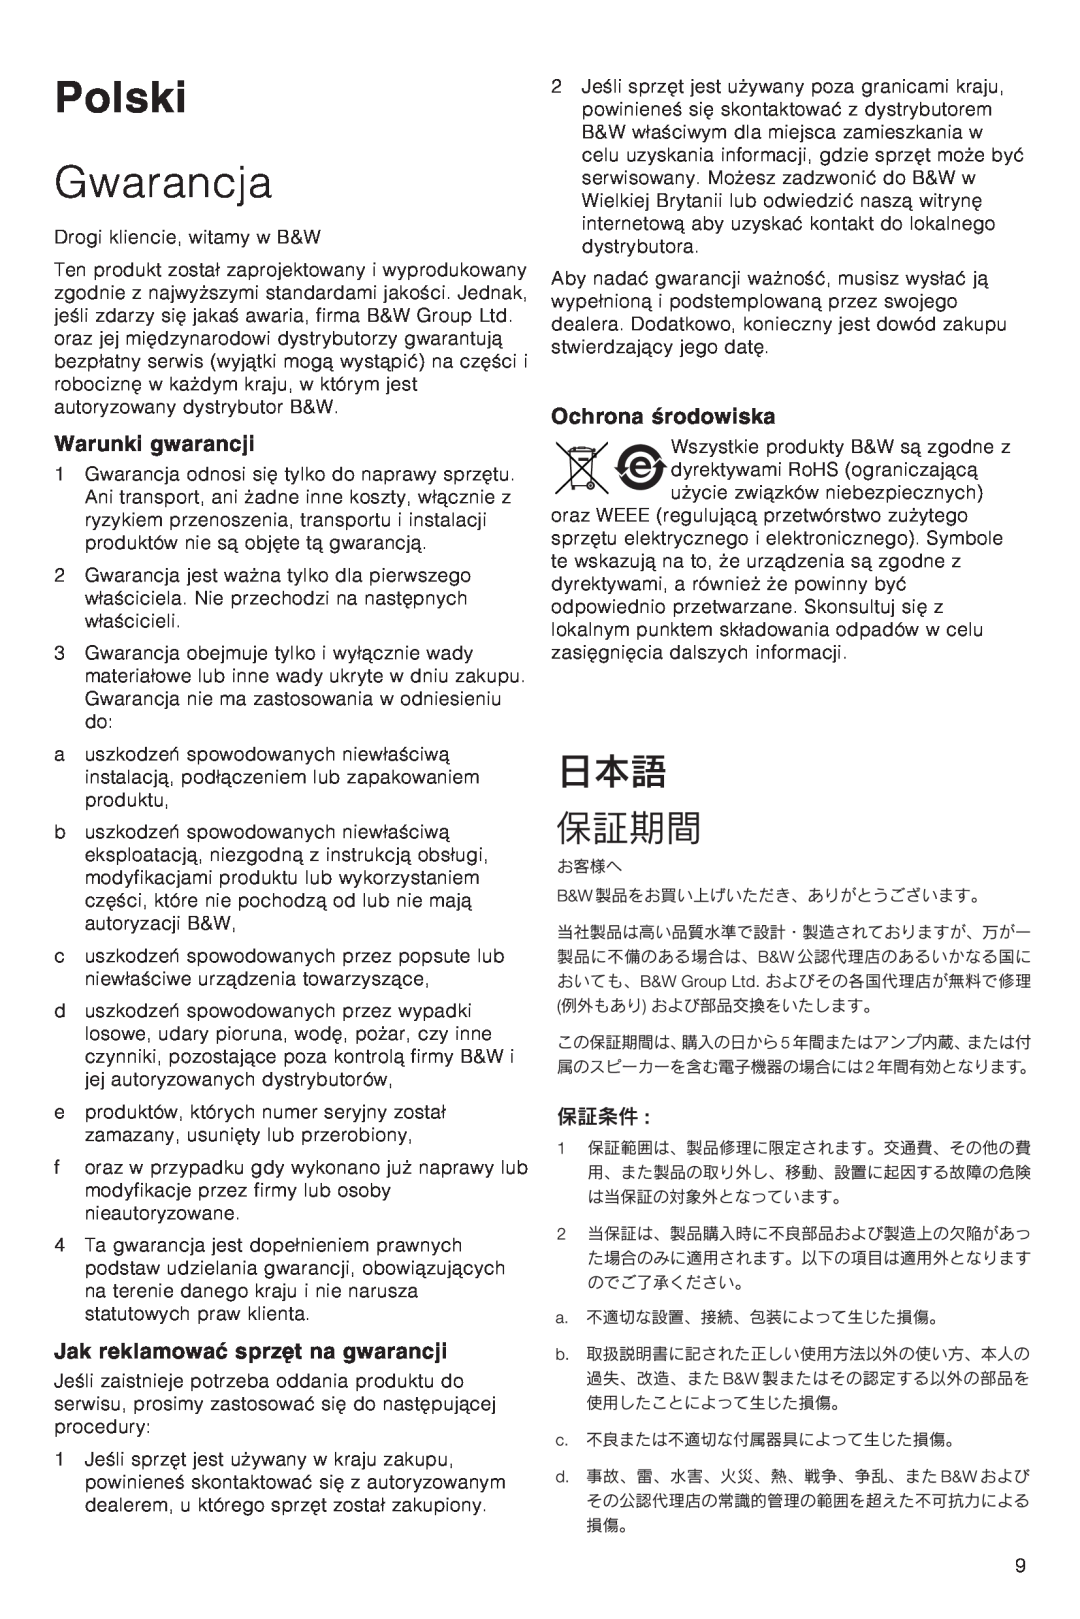 Bowers & Wilkins VM6 manual Polski, Gwarancja, Warunki gwarancji, Jak reklamowaπ sprzΔt na gwarancji, Ochrona ·rodowiska 